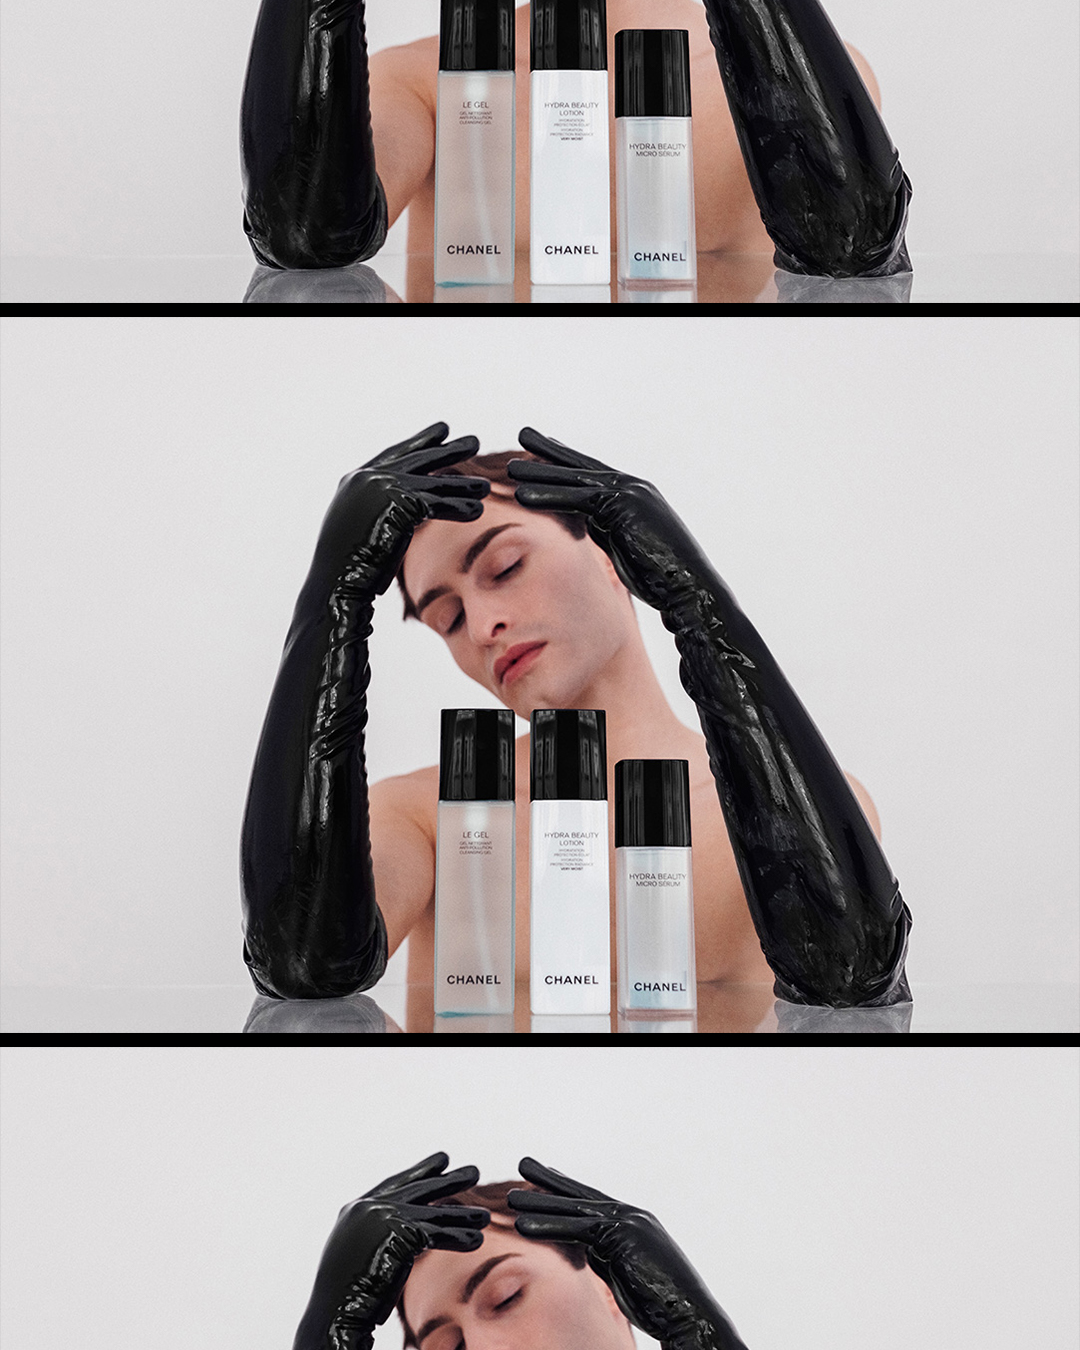 Test der Hydra Beauty Produkte von Chanel